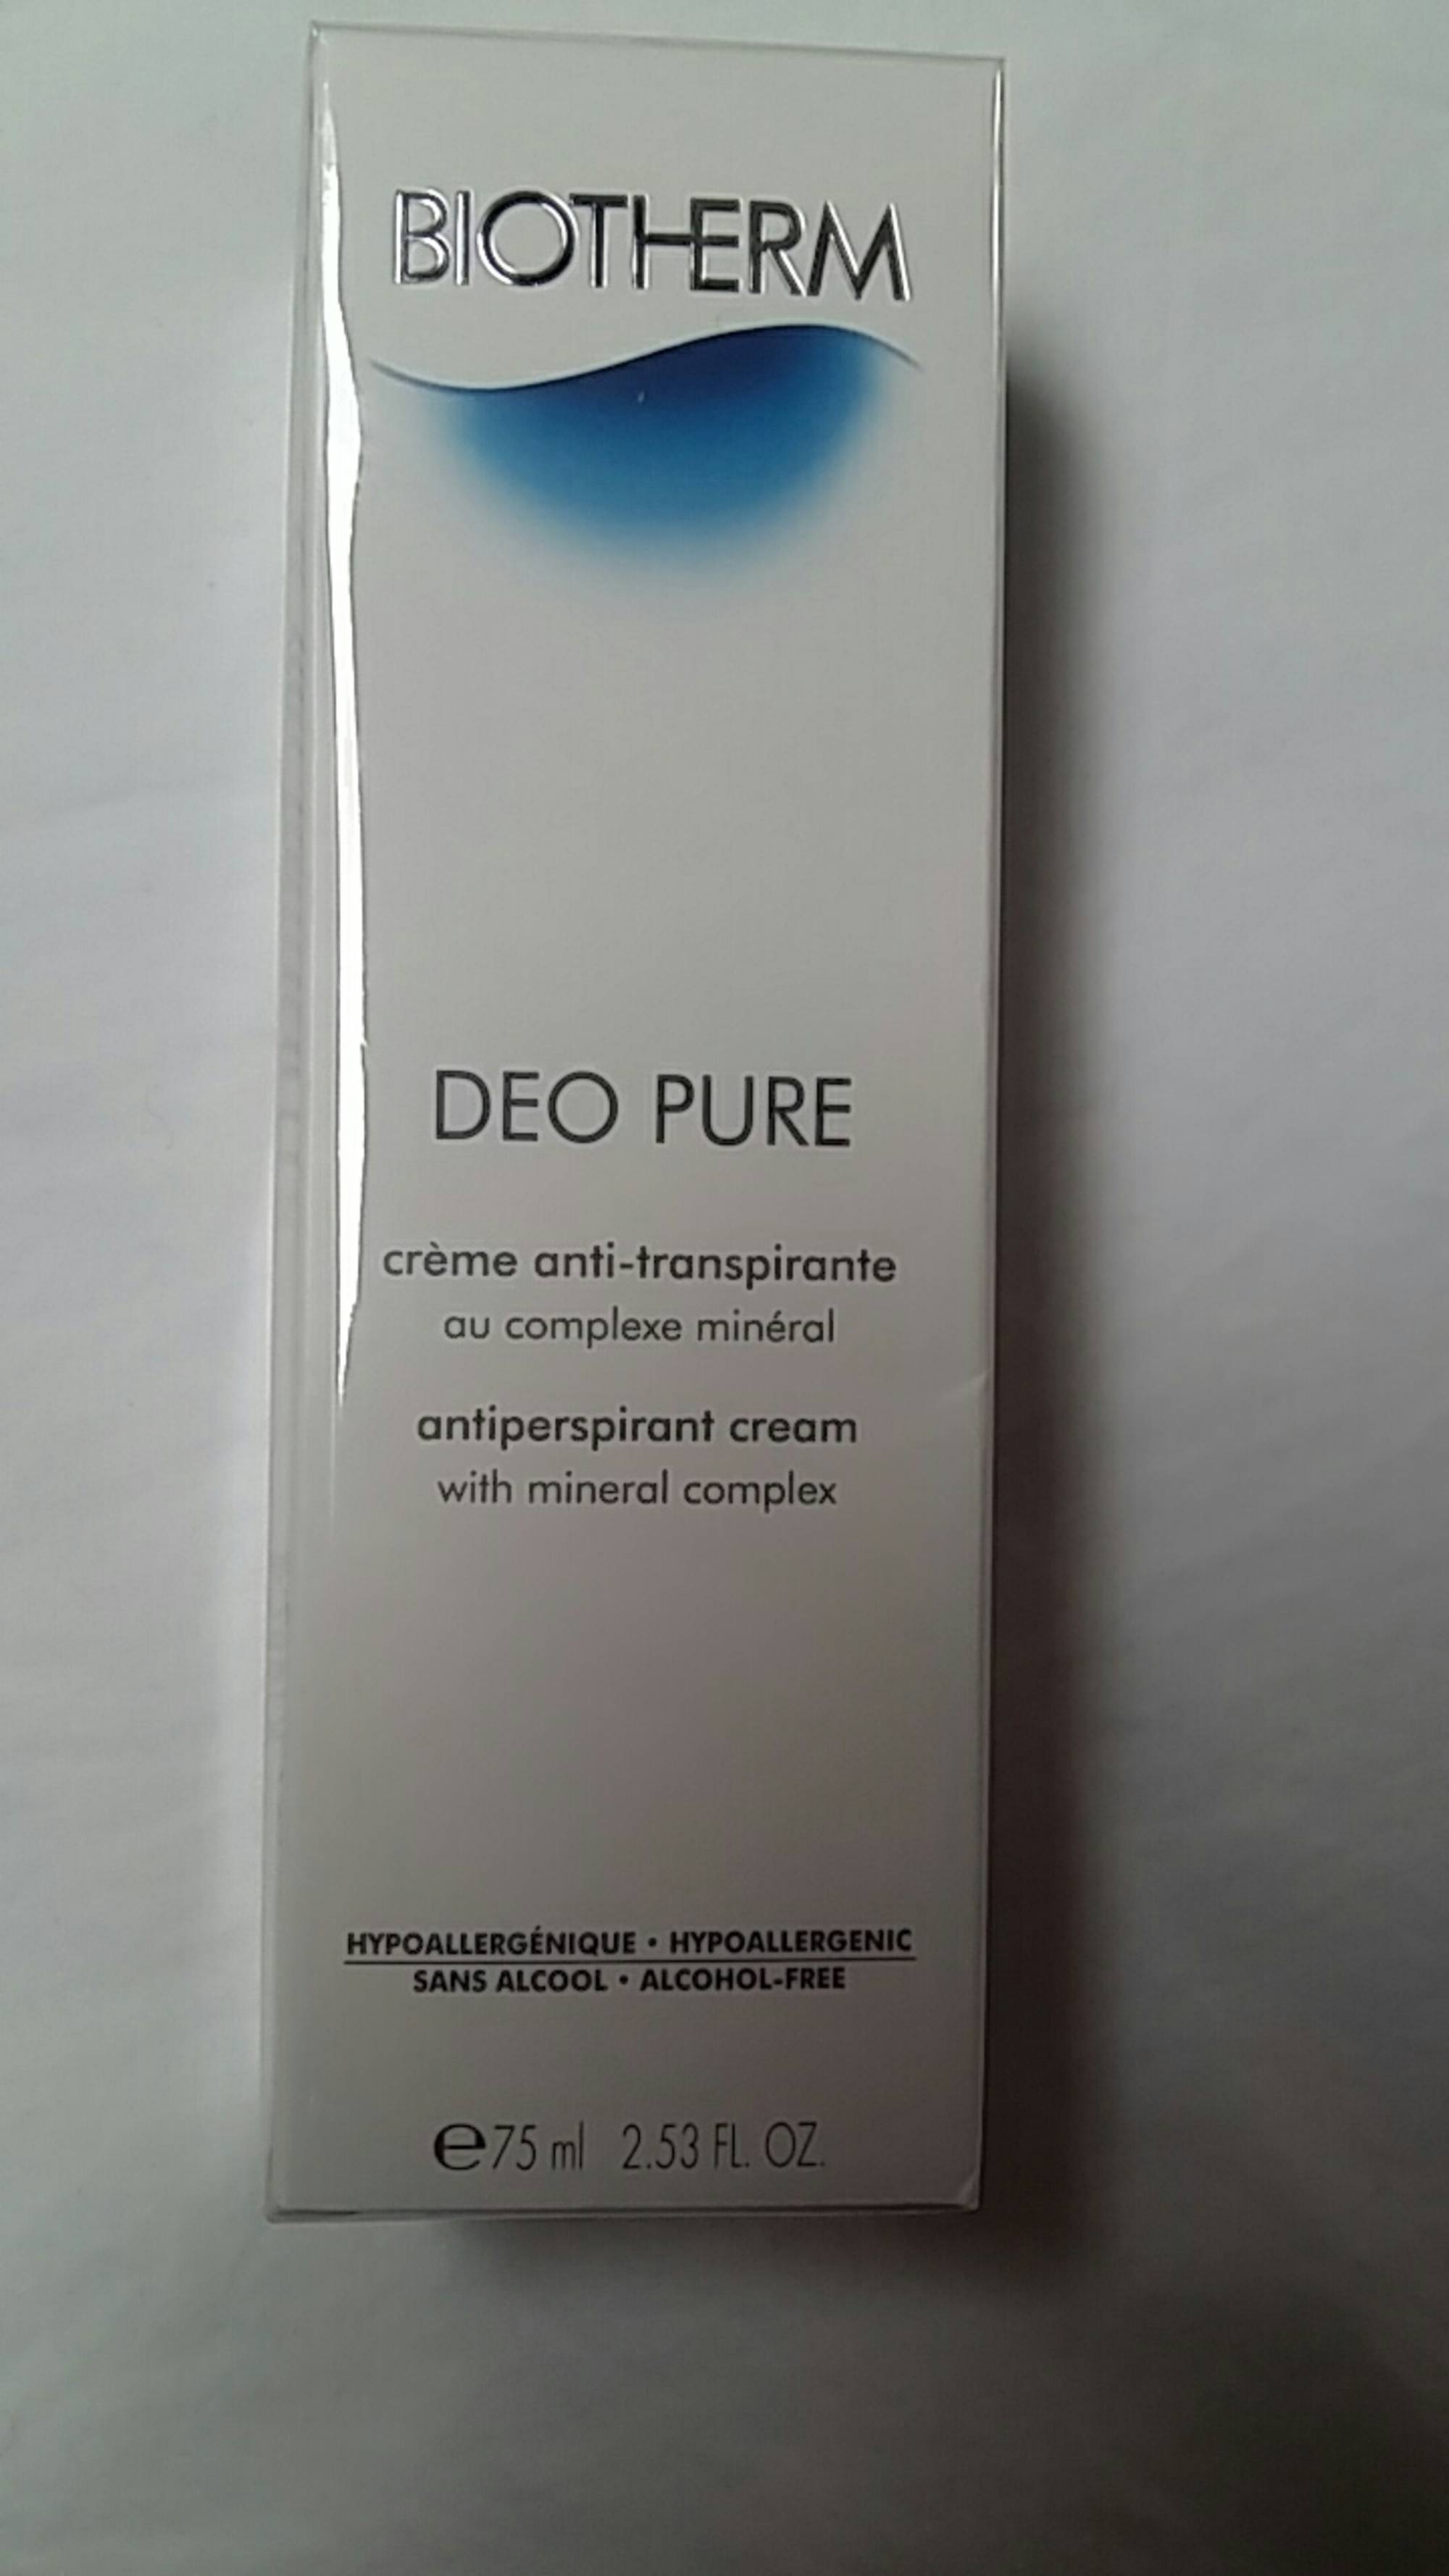 BIOTHERM - Deo pure - Crème anti-transpirante 